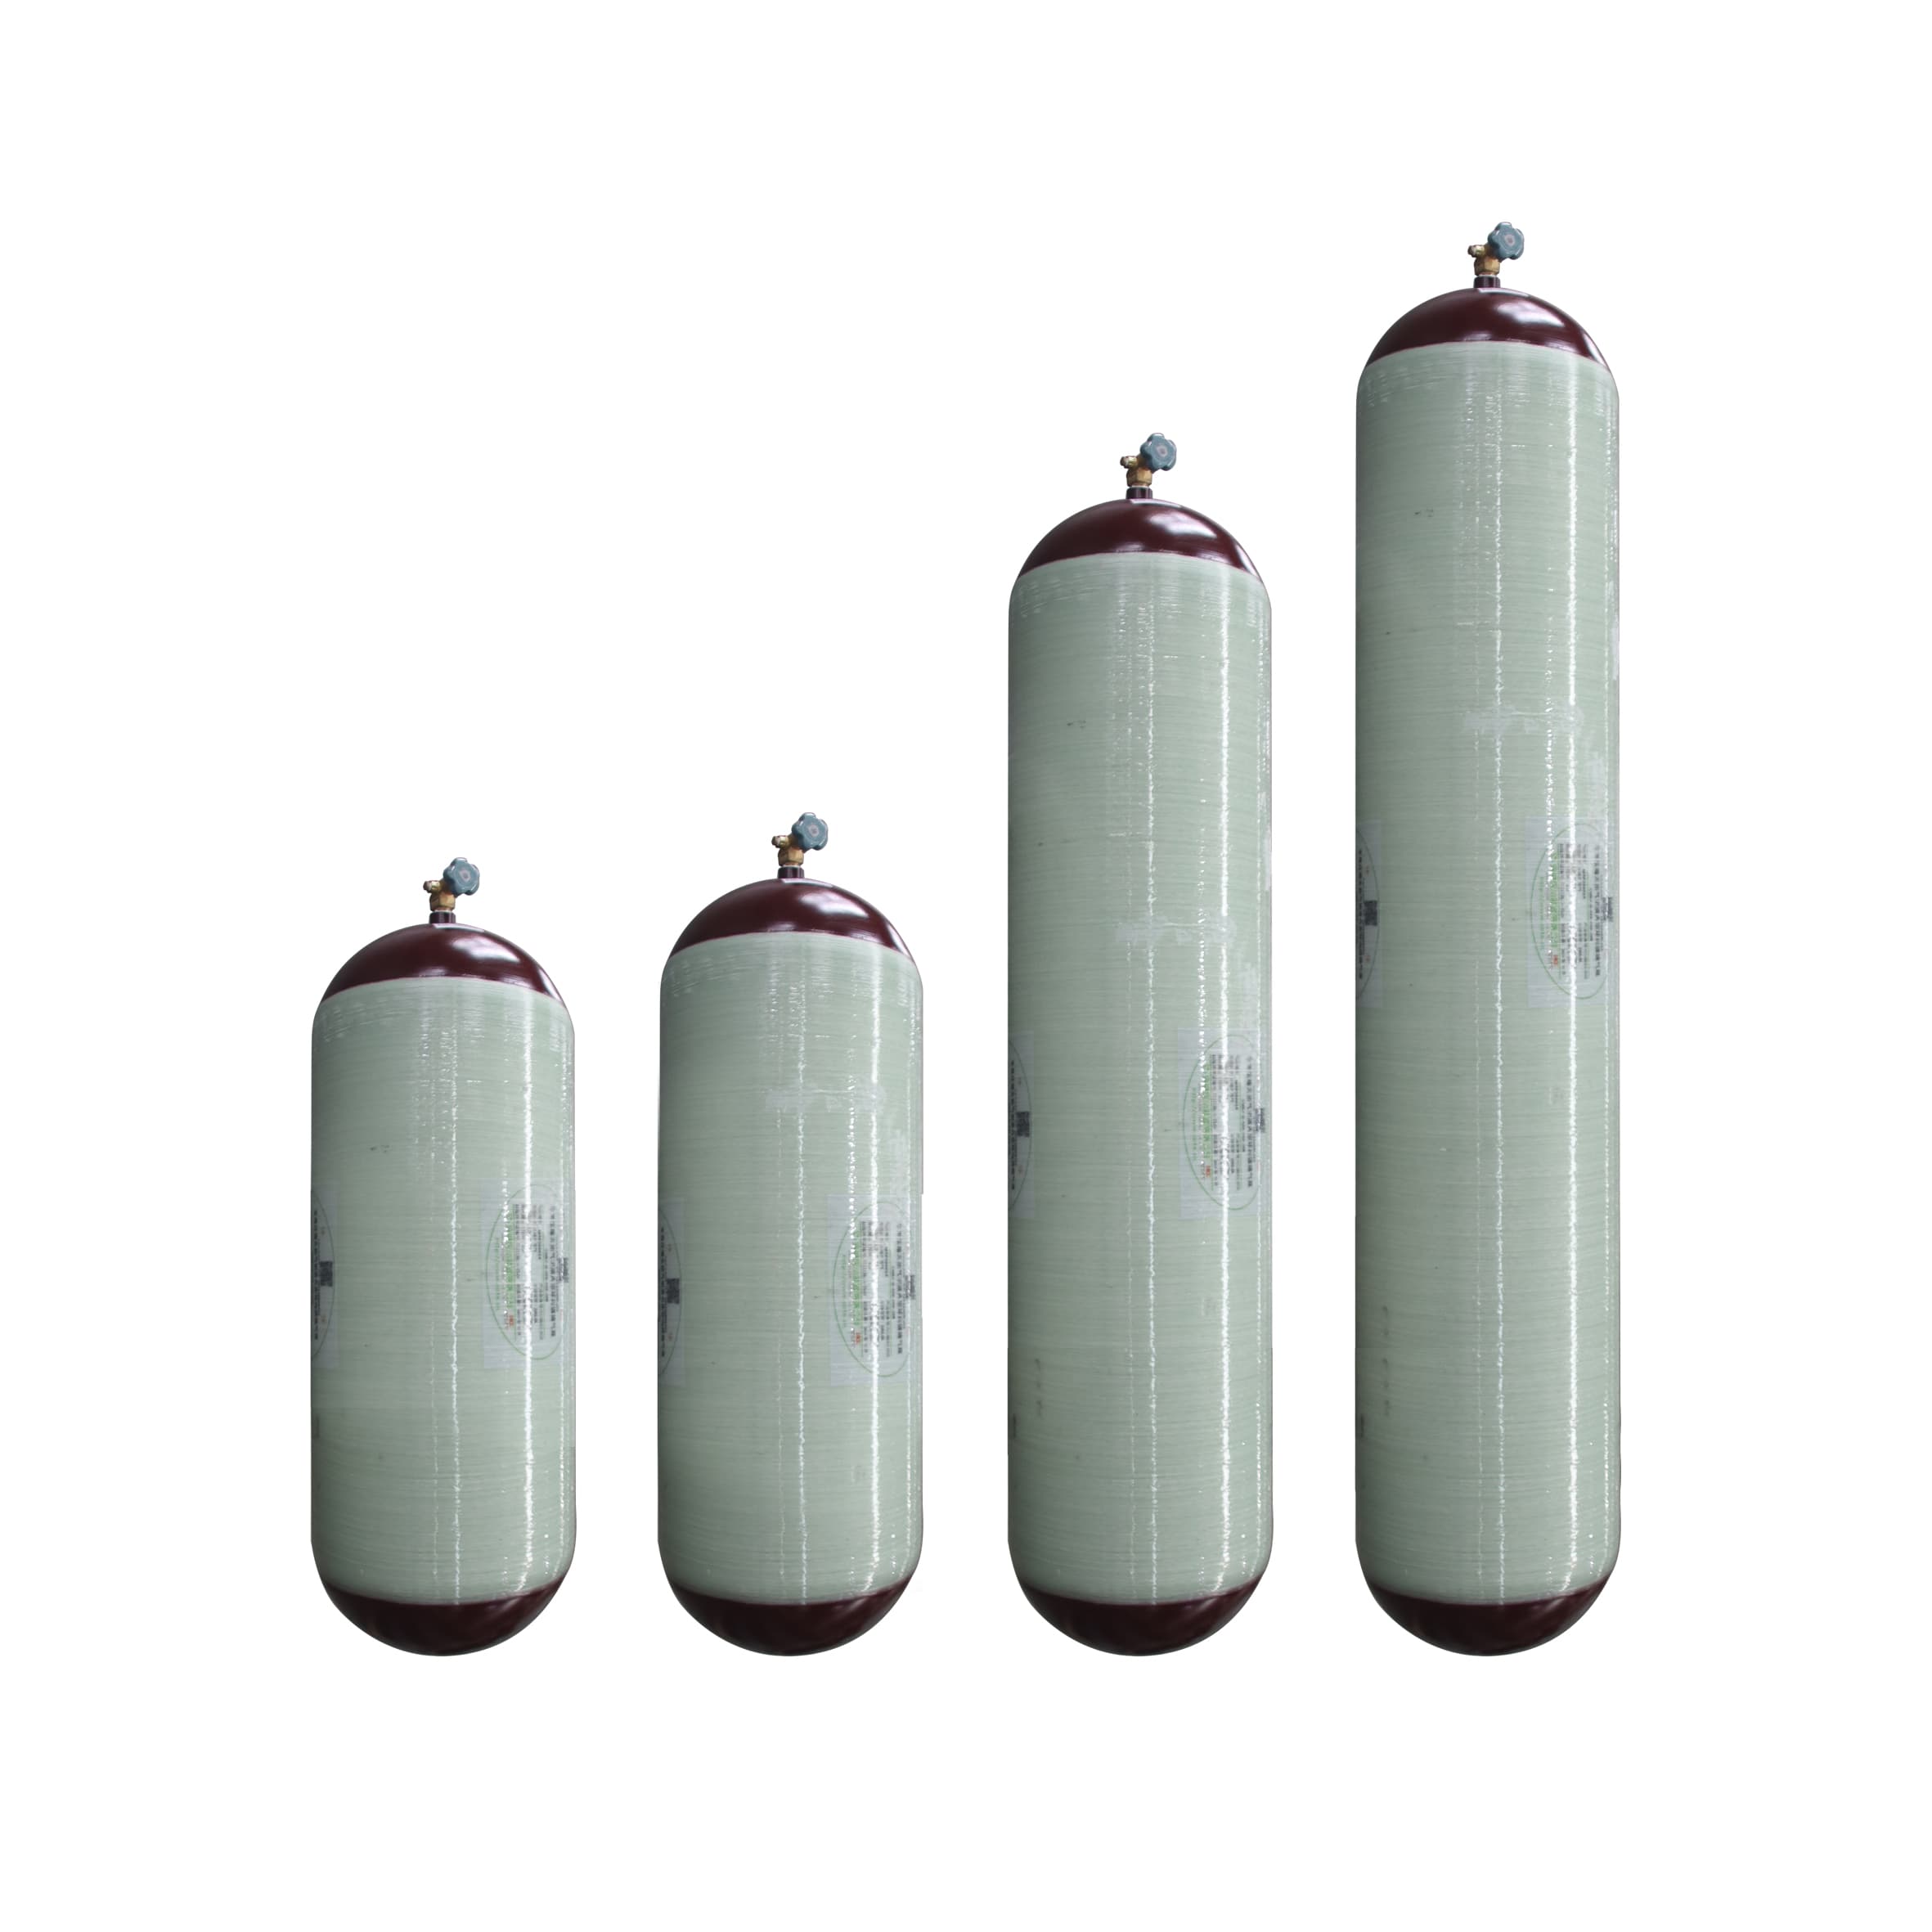 Cylinder manufacturer